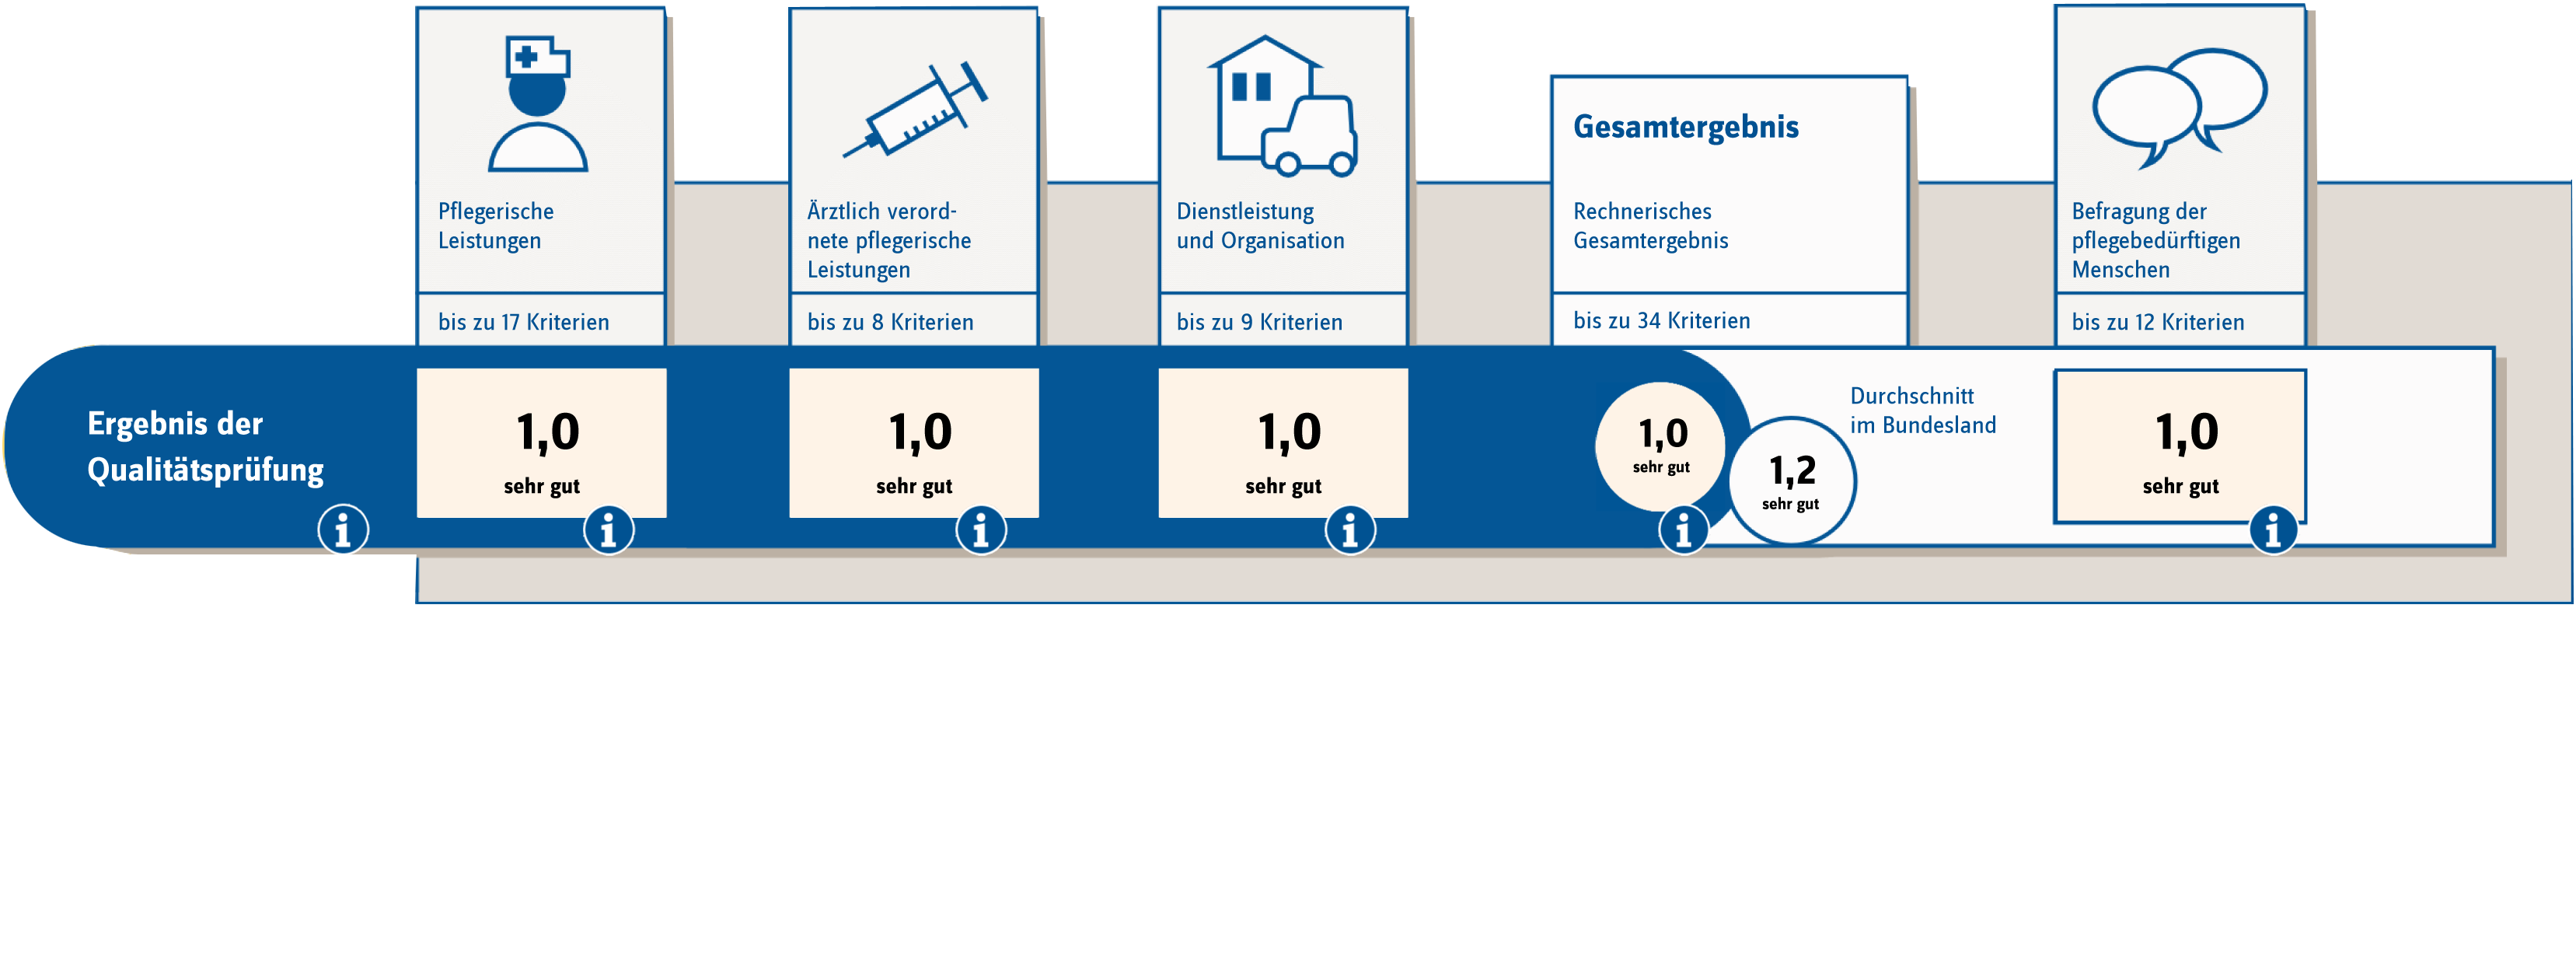 Transparenzbericht Pflegezentrum Grasberg GmbH freigestellt 2019 web